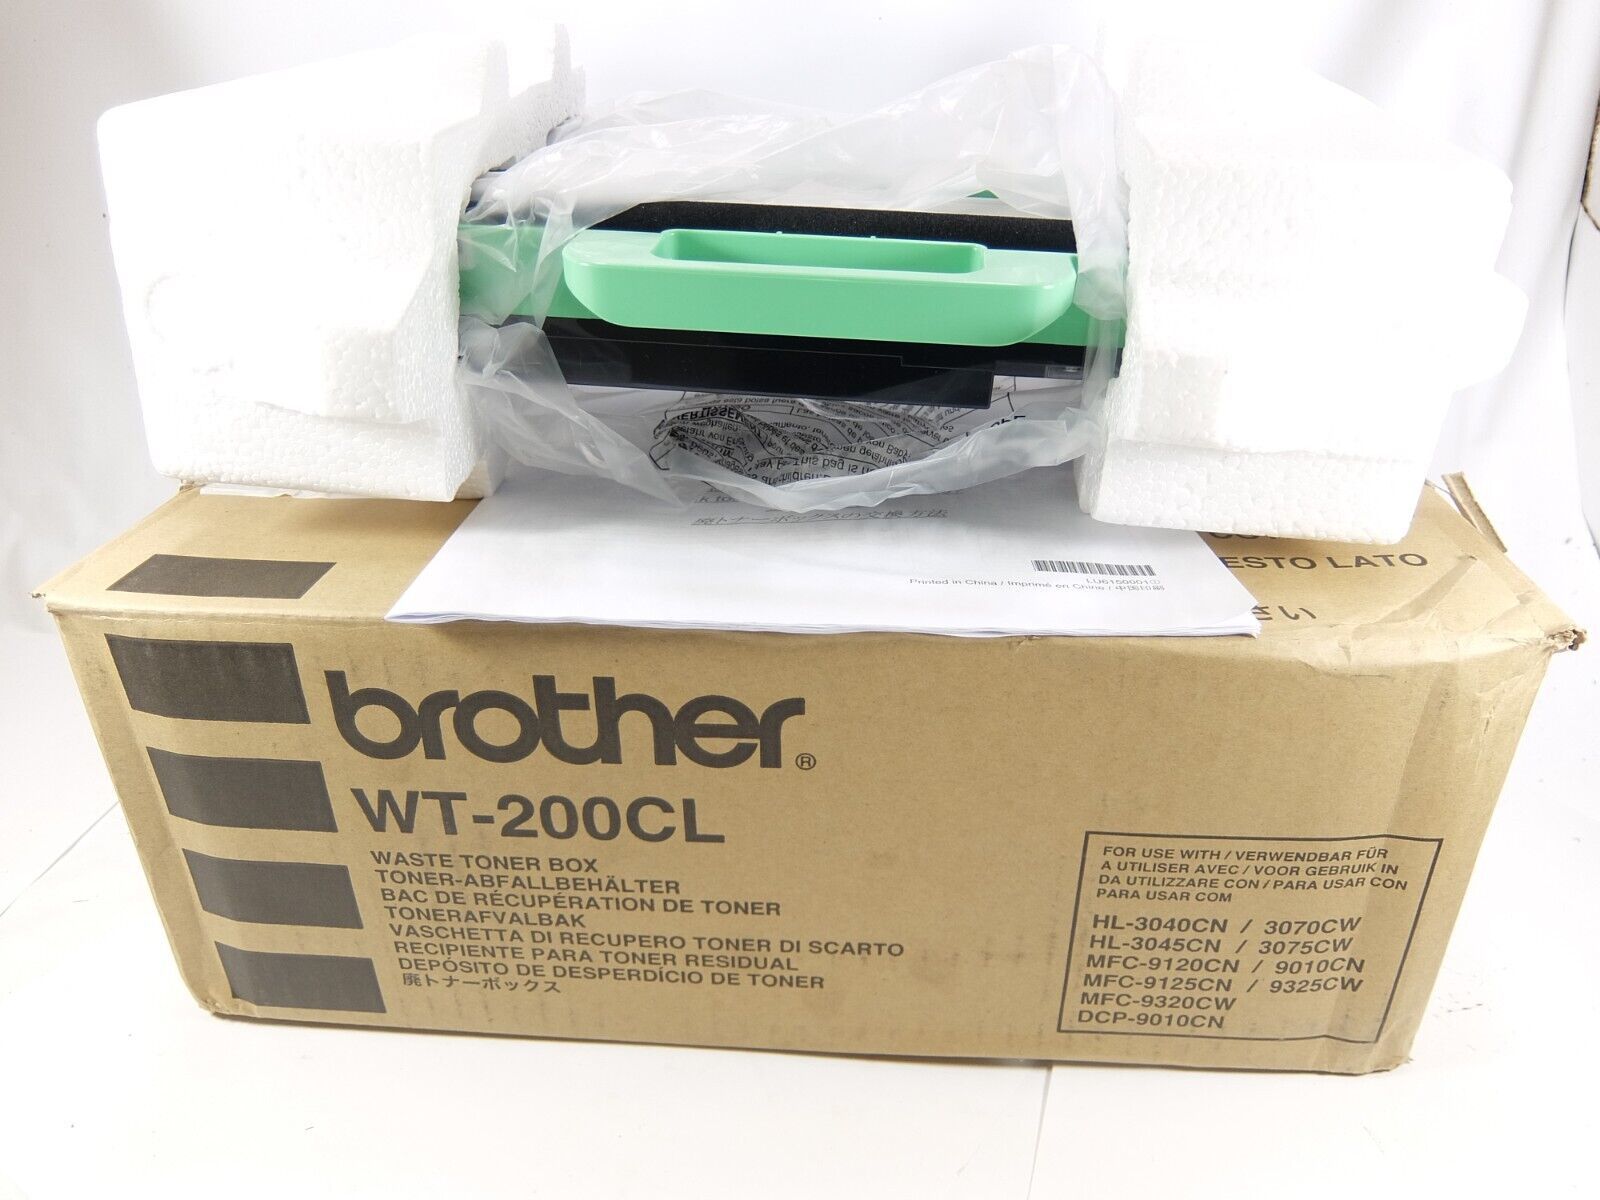 Brother WT-200CL Waste Toner Box fits HL-3040CN HL-3045CN  - $9.50